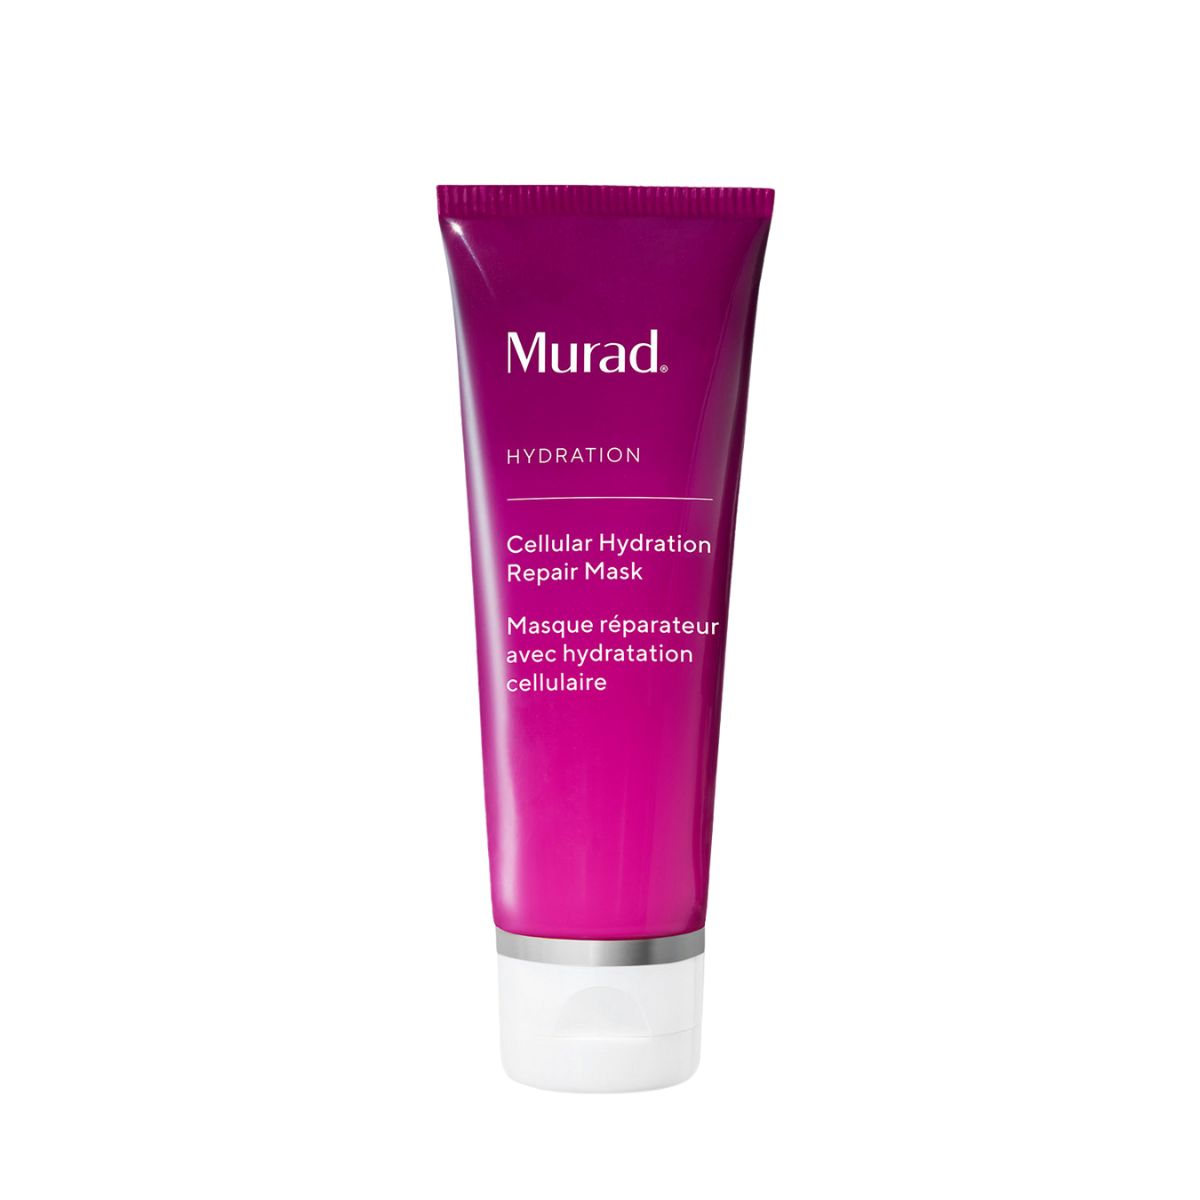 Murad Hydration Cellular Hydration Repair Mask 80ml